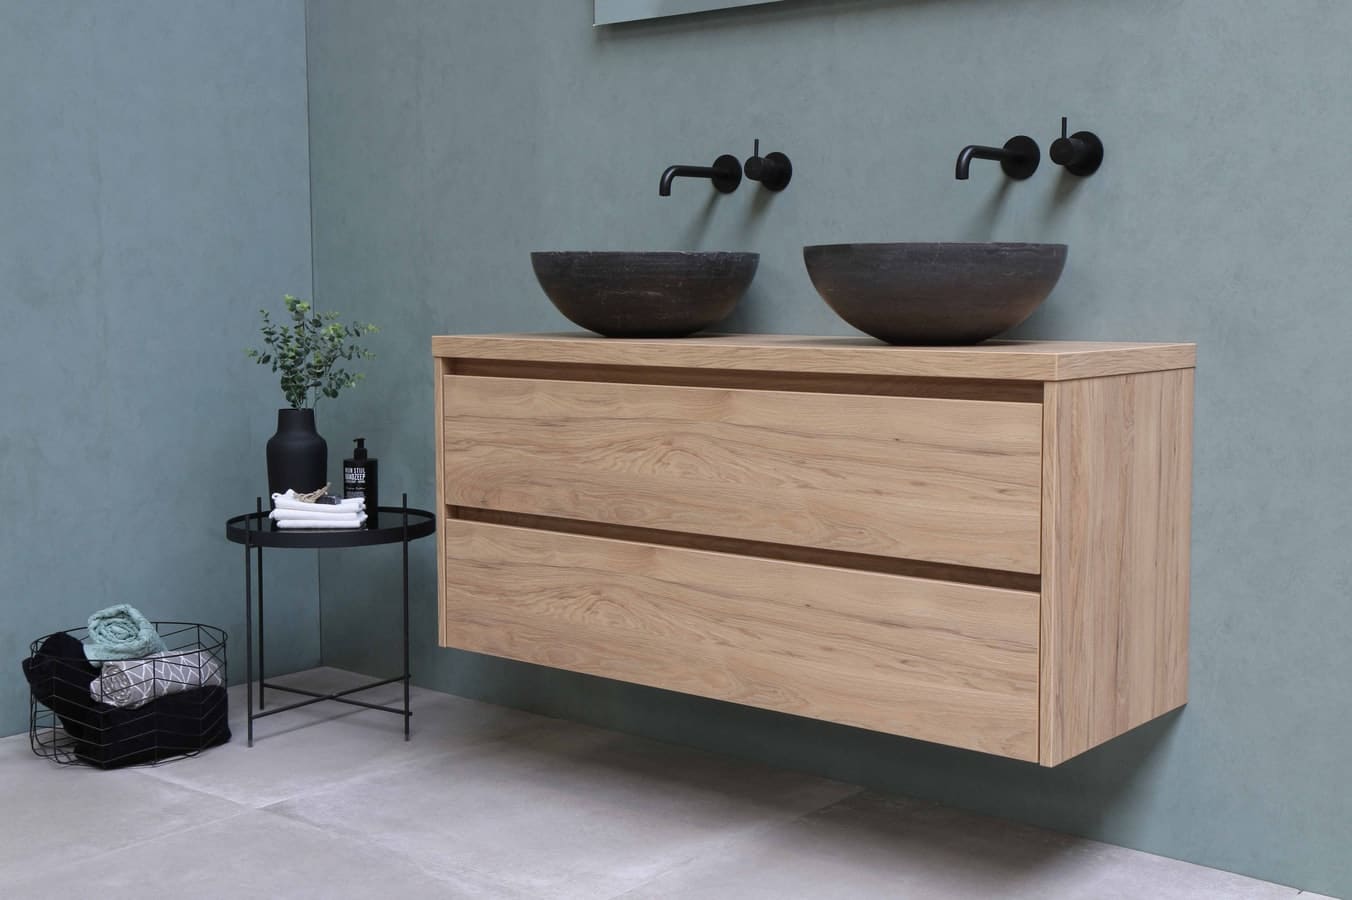 Contemporary bathroom double sink design